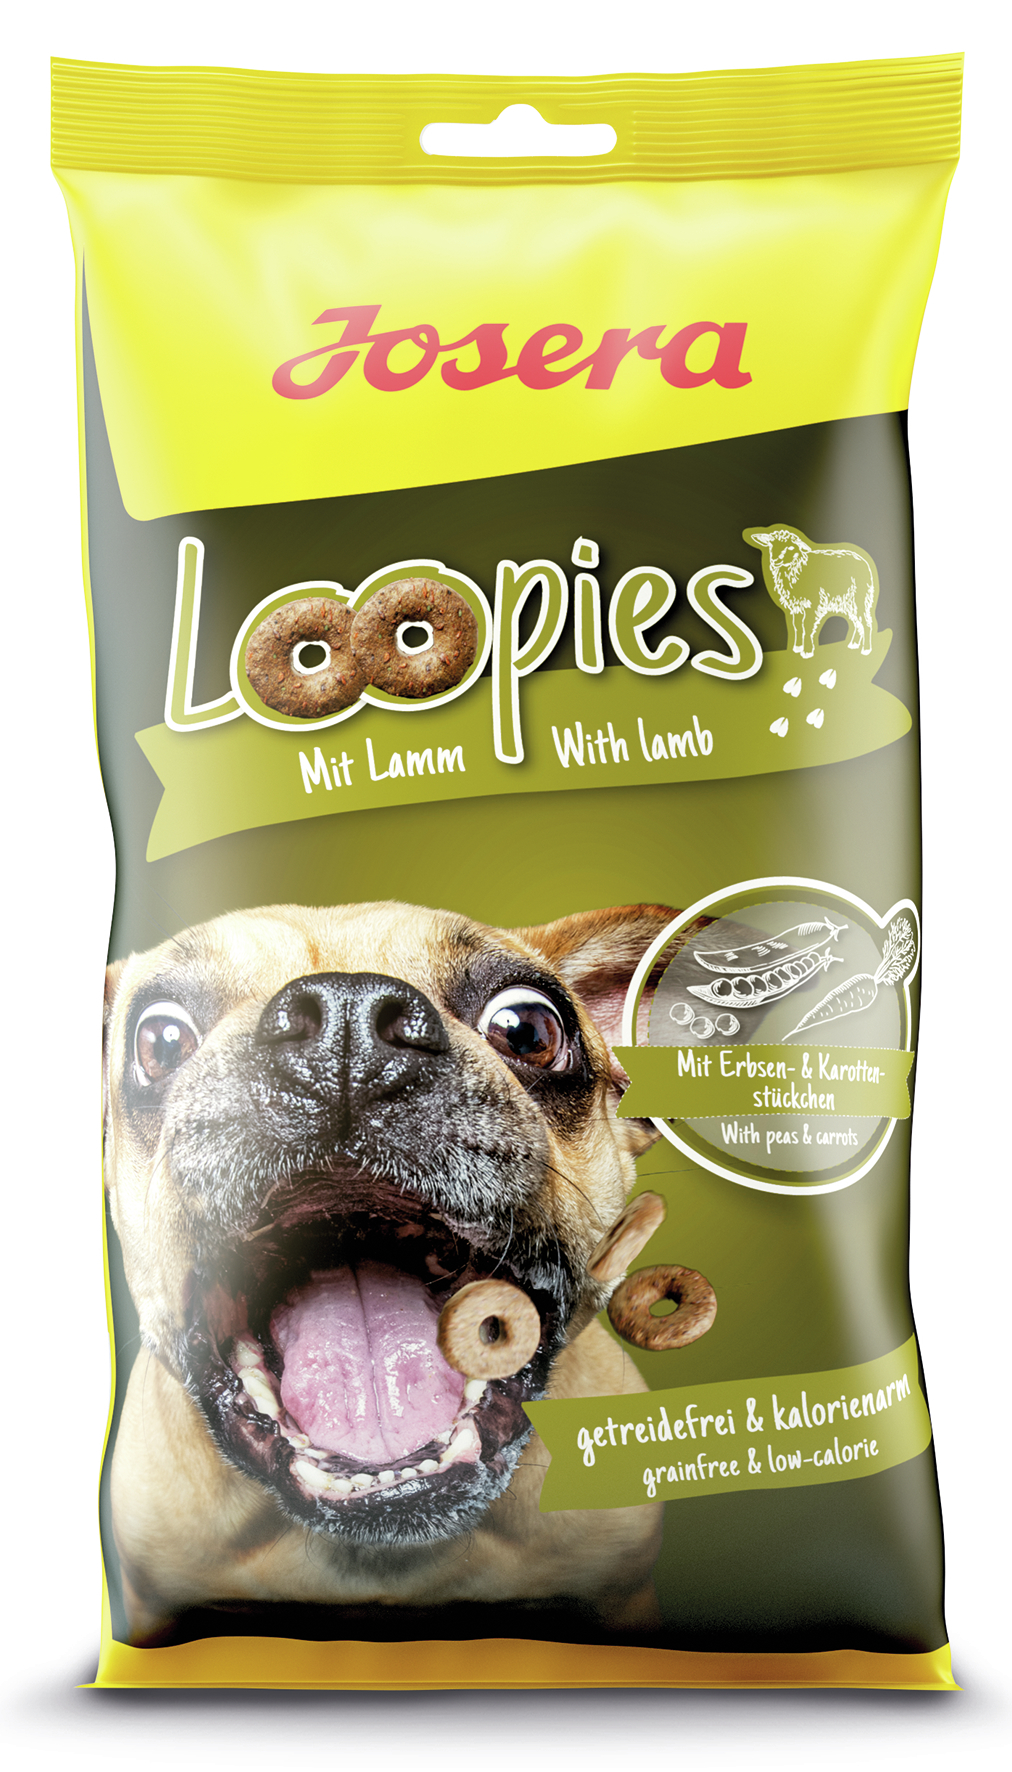 GRUNER Josera Loopies mit Lamm 150g Snacks & Spezialprodukte-KEINE DISPO